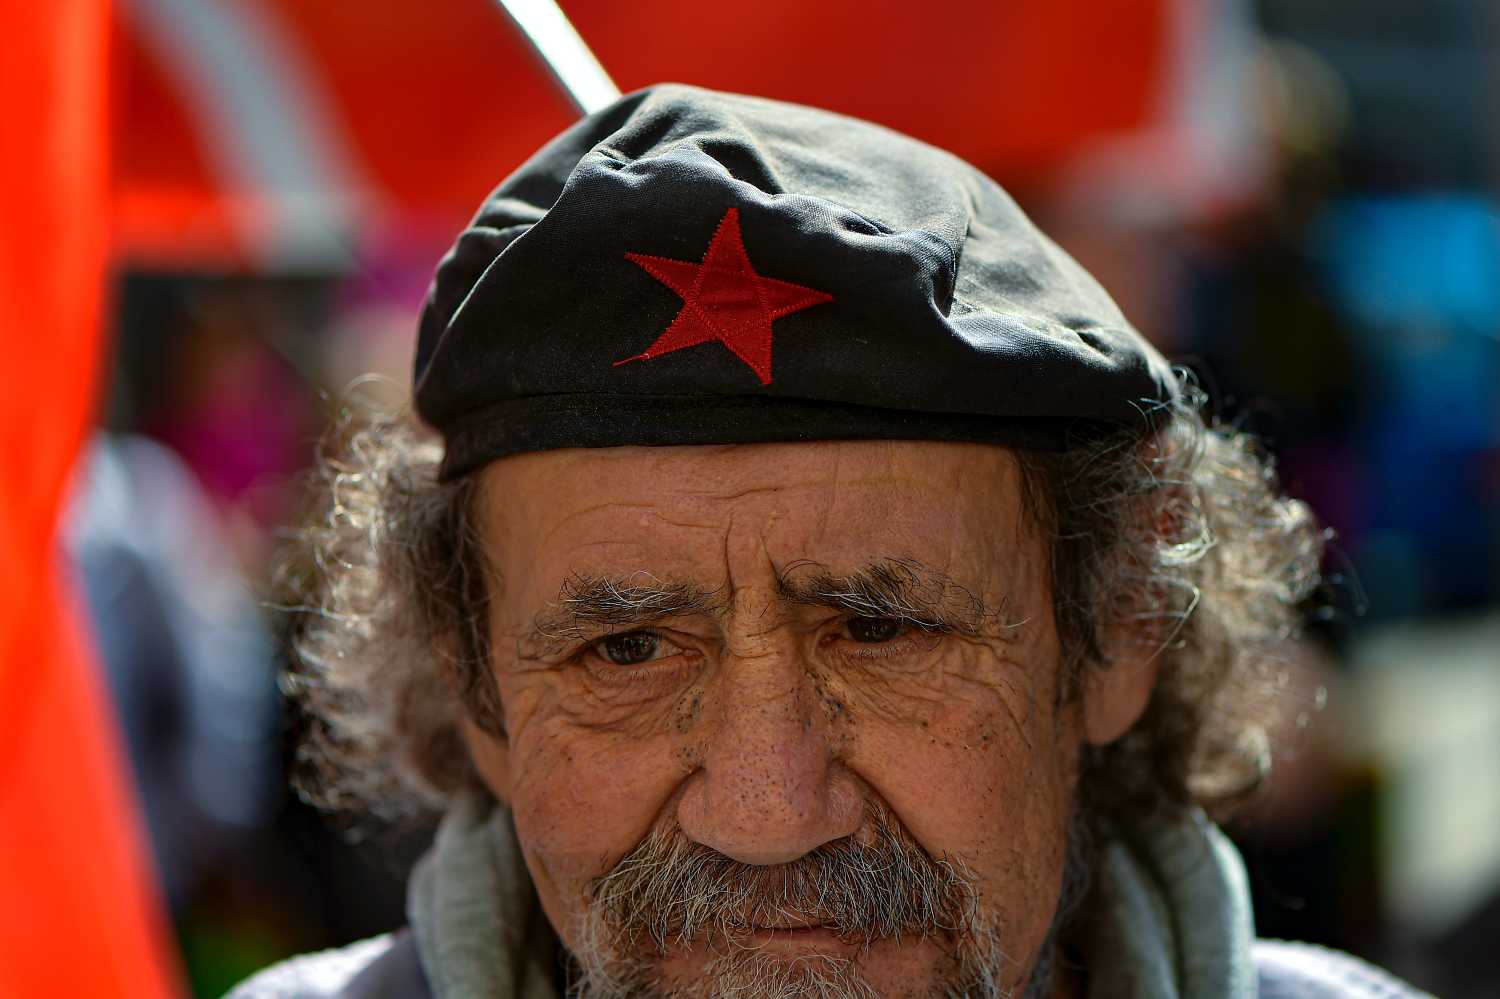 Ισπανία: Νέες μισθολογικές αυξήσεις εξετάζουν οι εργοδότες κάτω από την πίεση των συνδικάτων